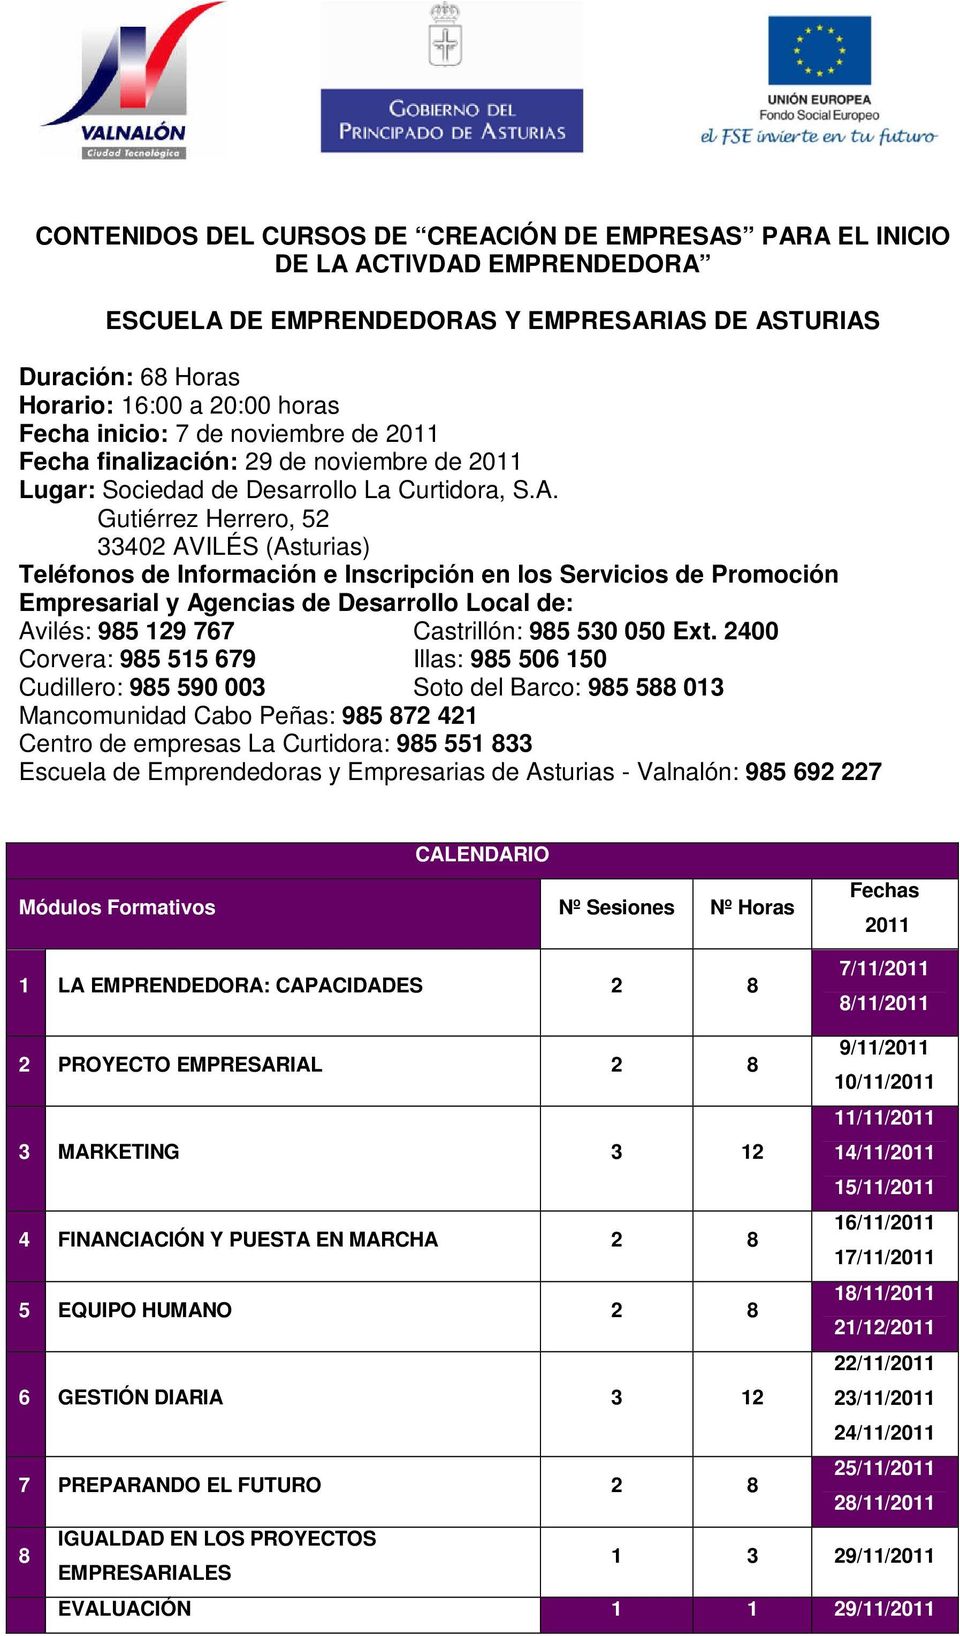 Gutiérrez Herrero, 52 33402 AVILÉS (Asturias) Teléfonos de Información e Inscripción en los Servicios de Promoción Empresarial y Agencias de Desarrollo Local de: Avilés: 985 129 767 Castrillón: 985